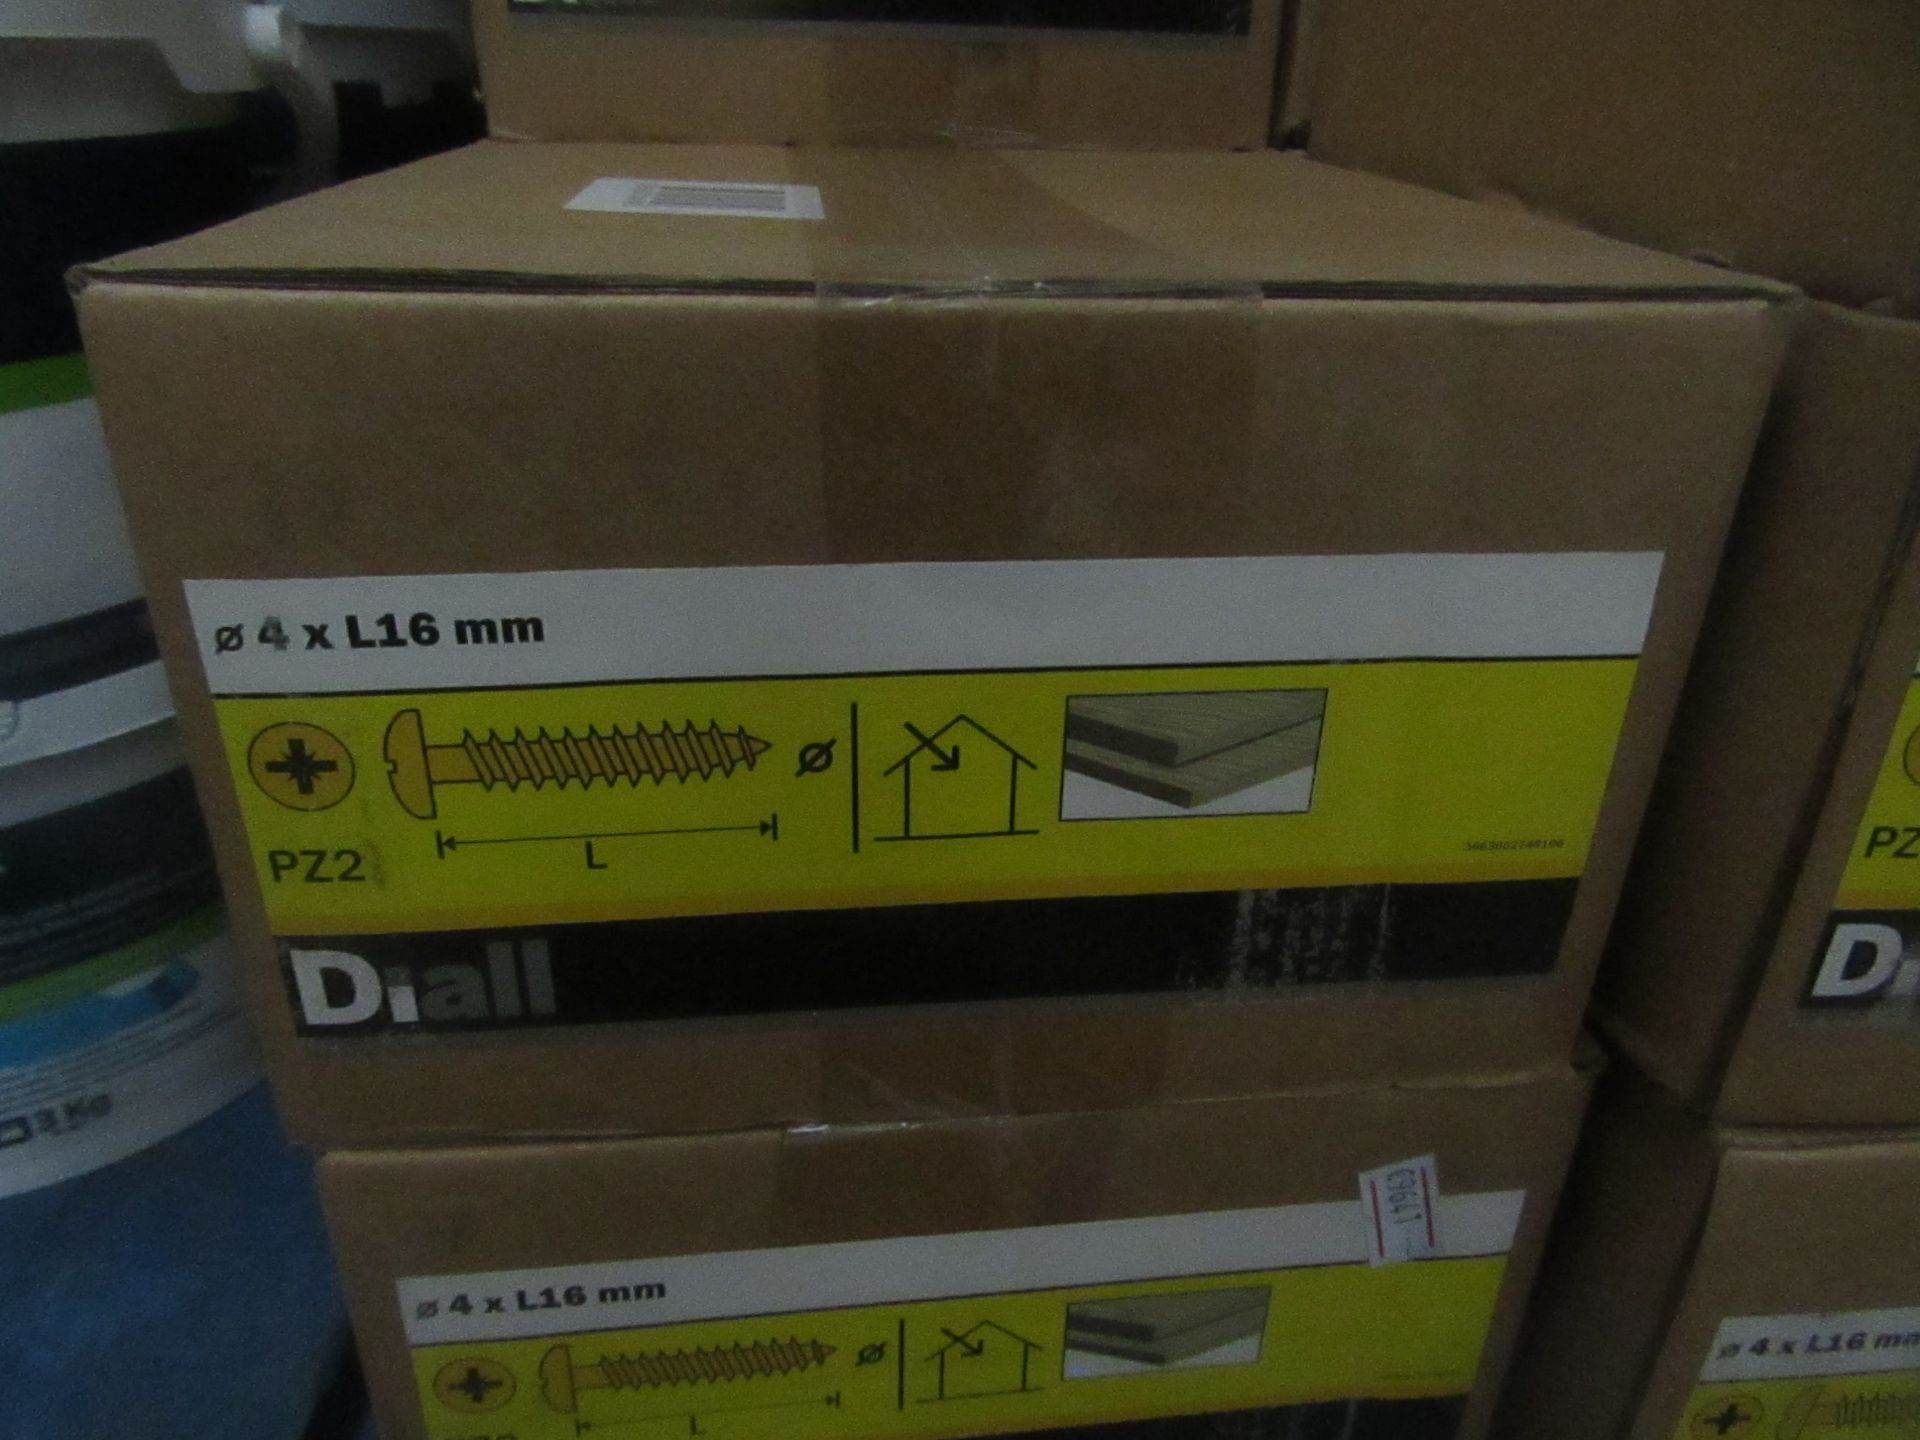 Diall - Wood Screw Pan YZP 4x16mm Loose - Unused & Boxed.